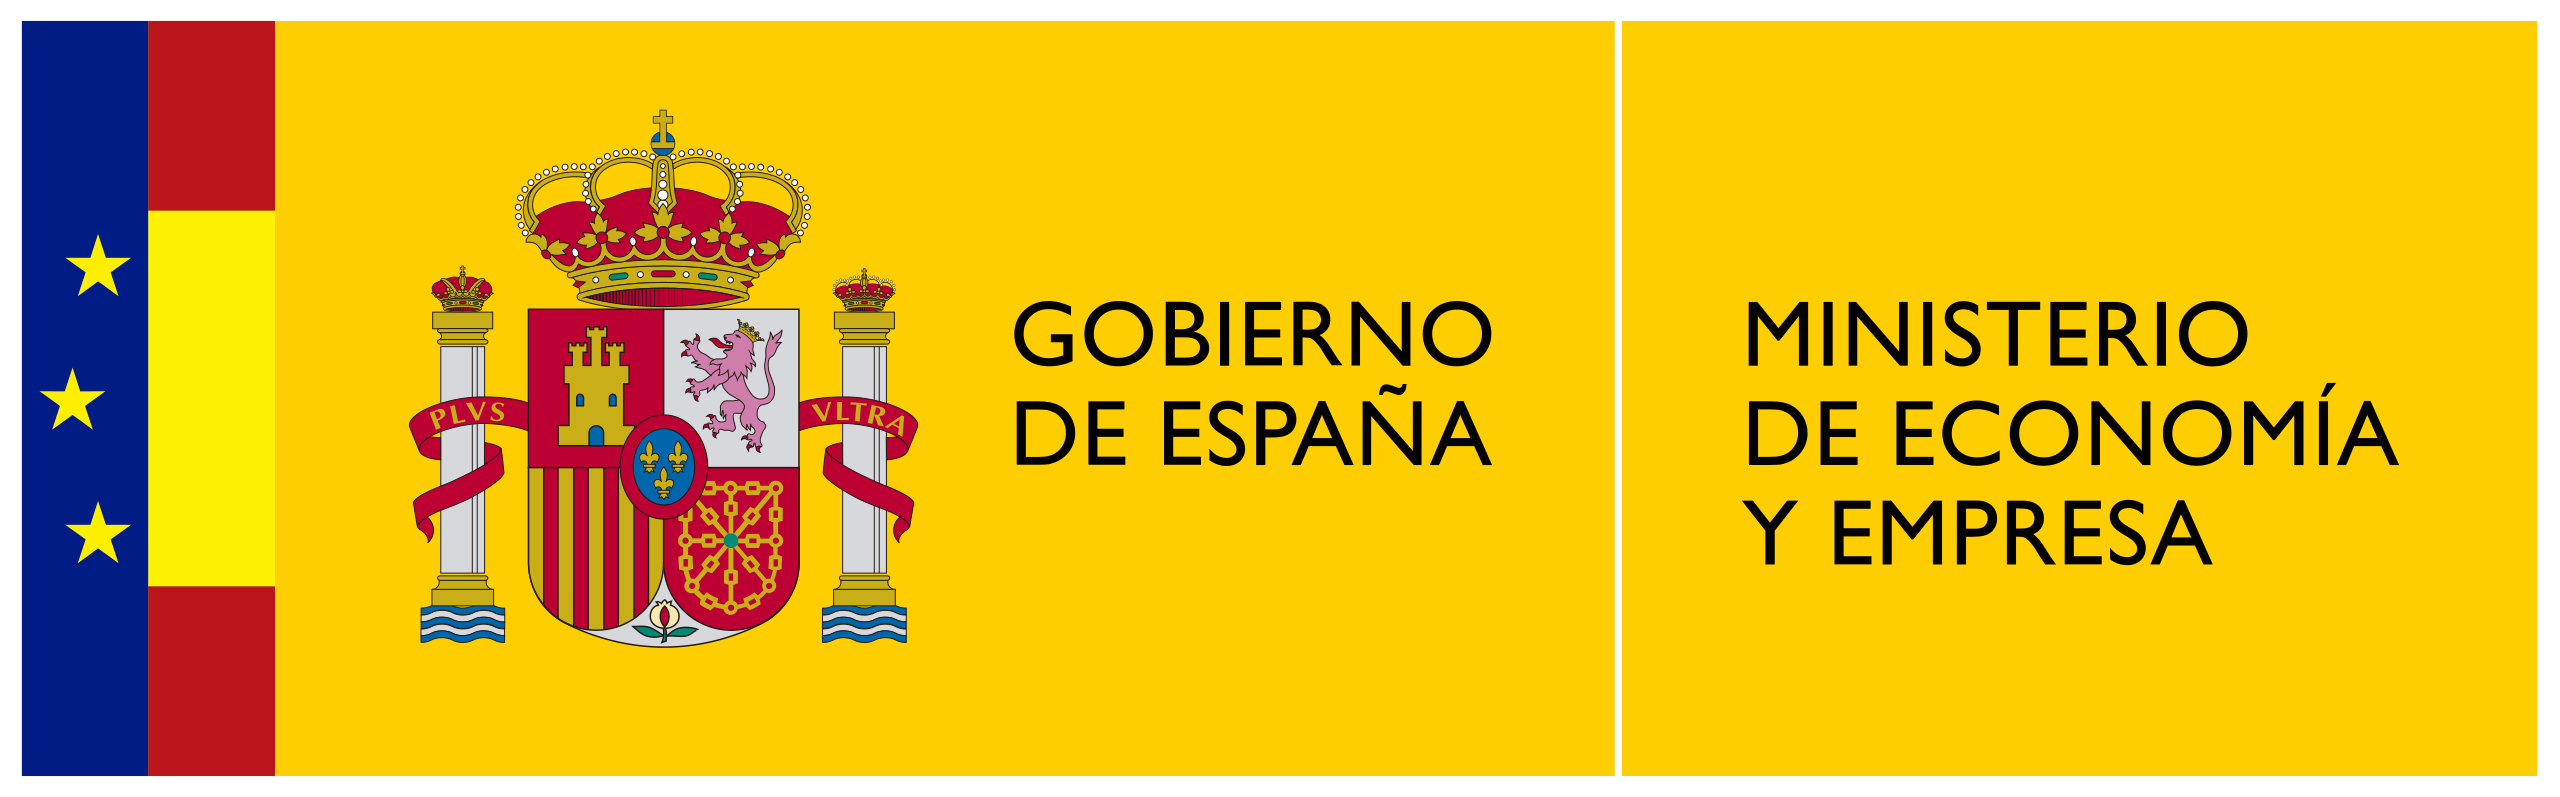 Logo MINISTERIO DE ECONOMIA Y EMPRESA